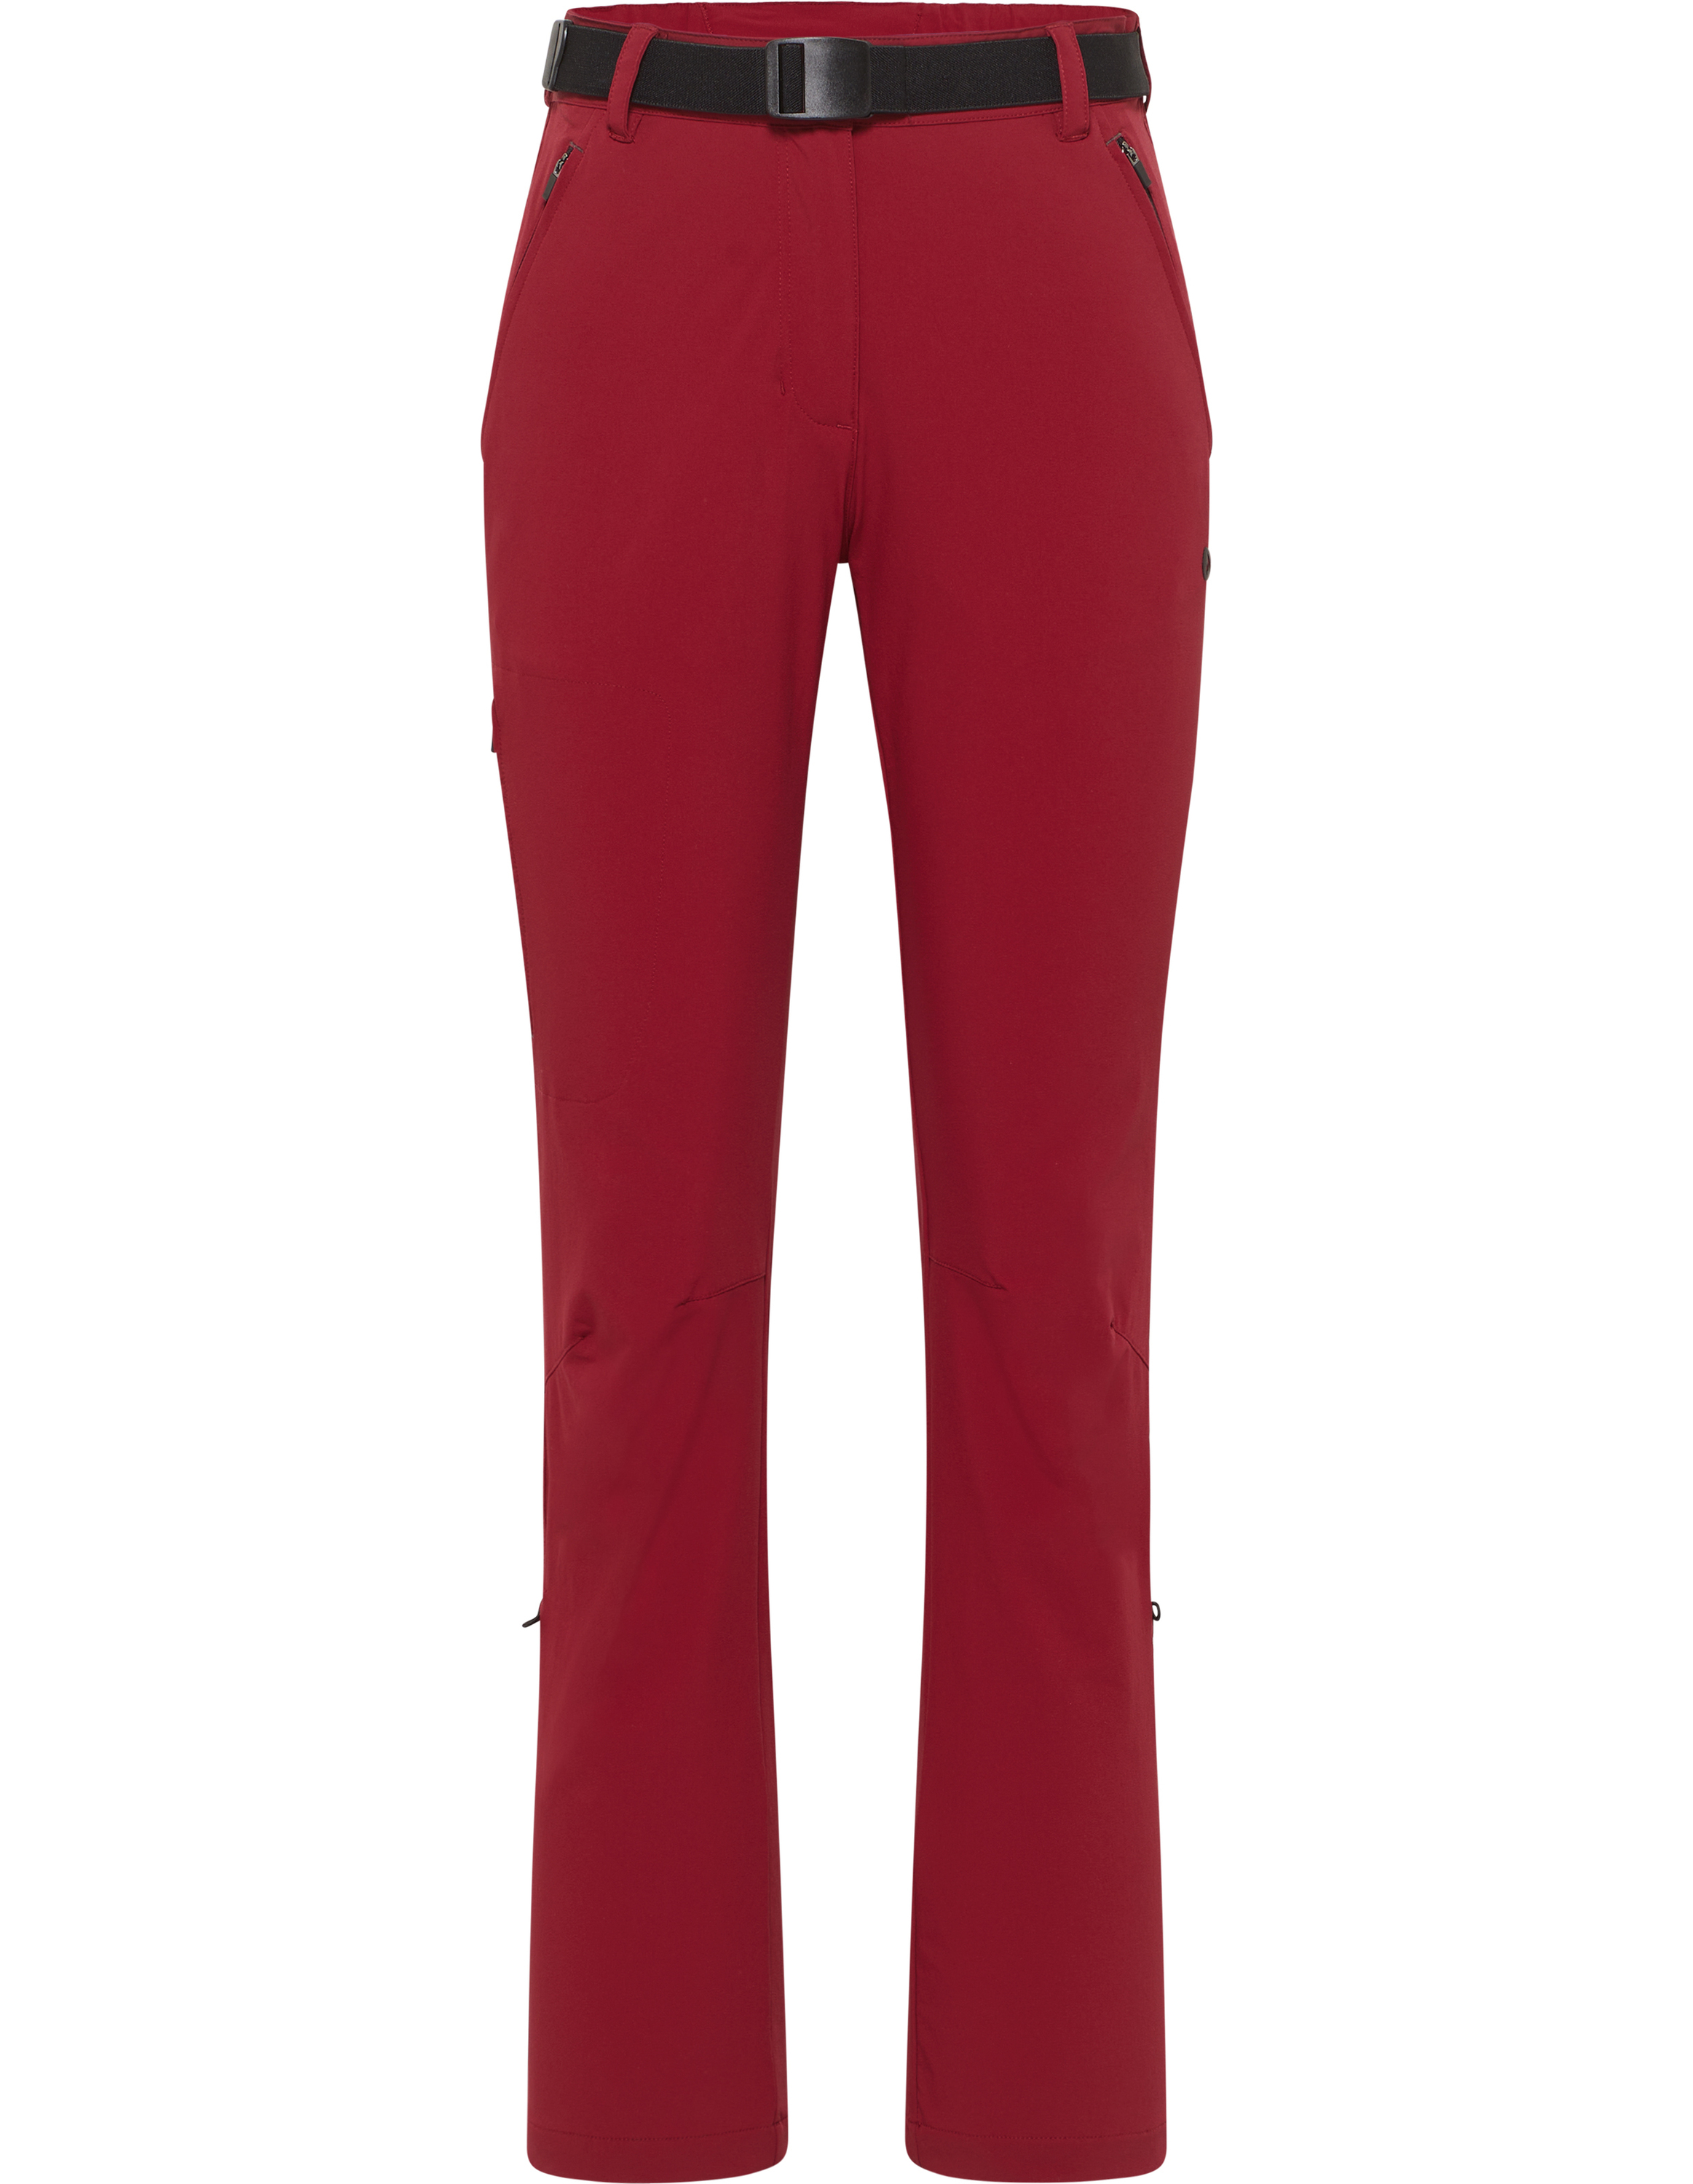 Спортивные брюки hot sportswear Tofino, цвет crimson red